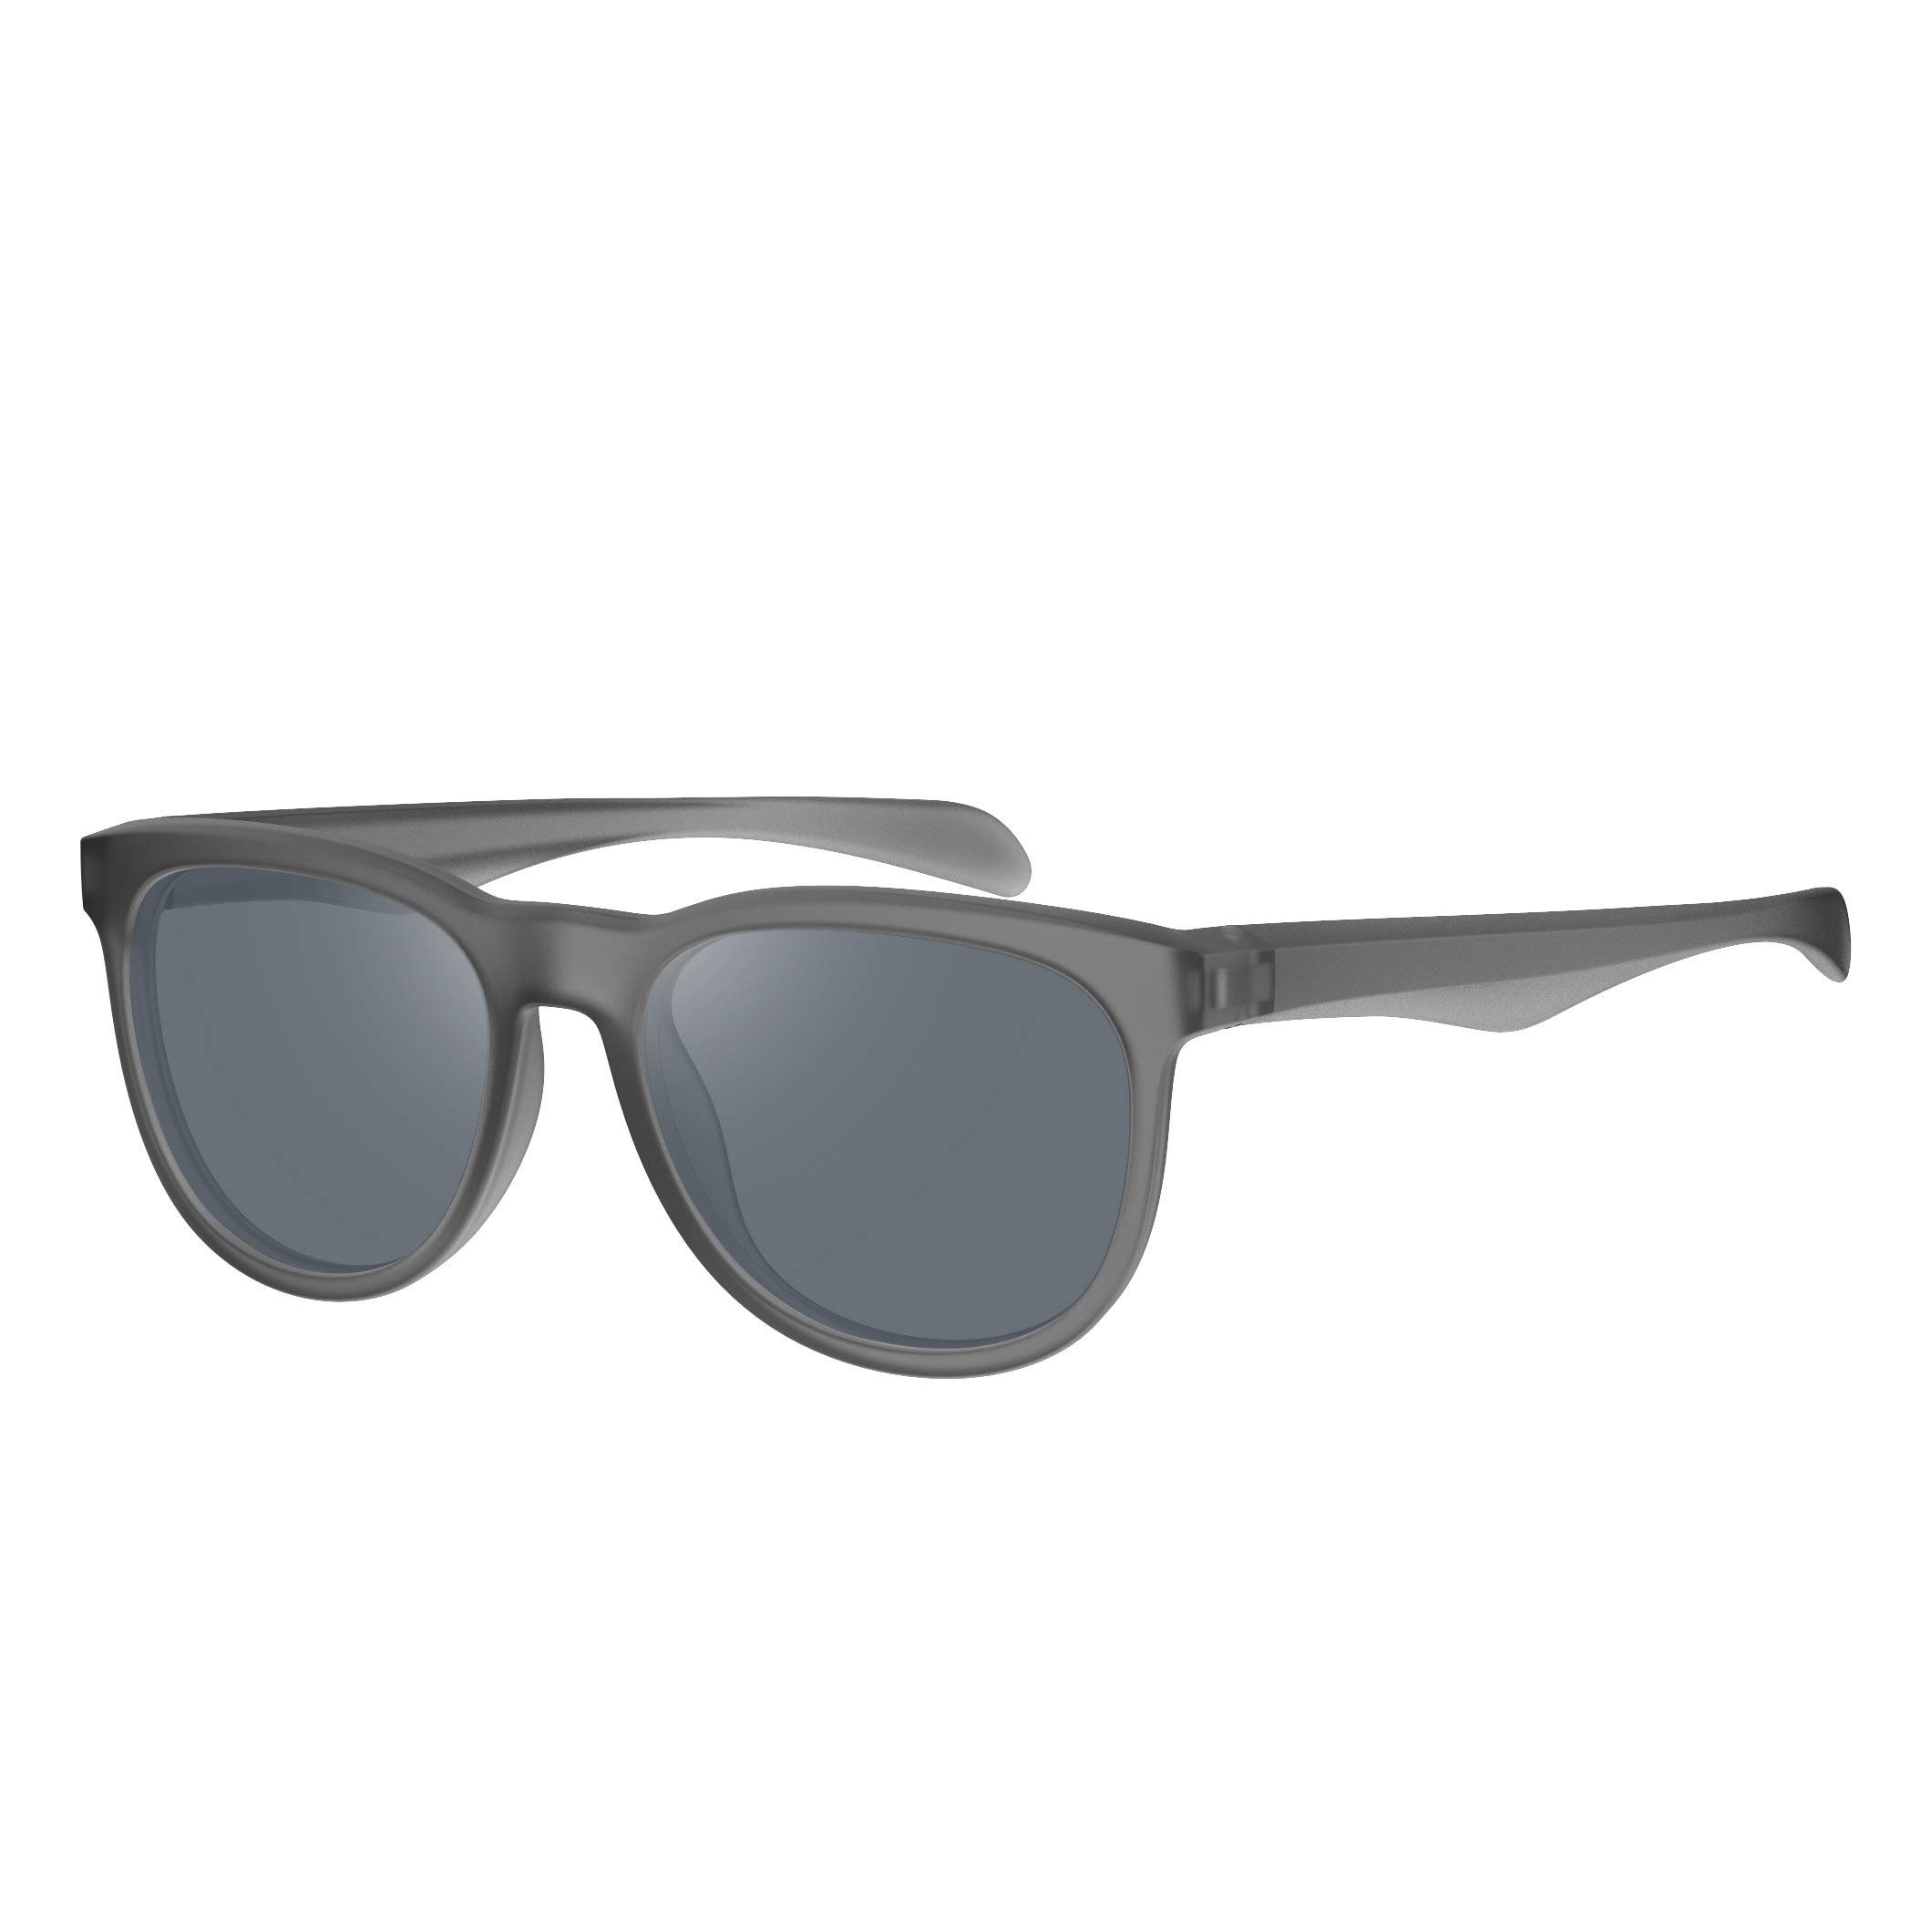 Elegear Sonnenbrille Polarisierte Elegante Brille (Panto-Form, Damen Retro) Grau | Sonnenbrillen